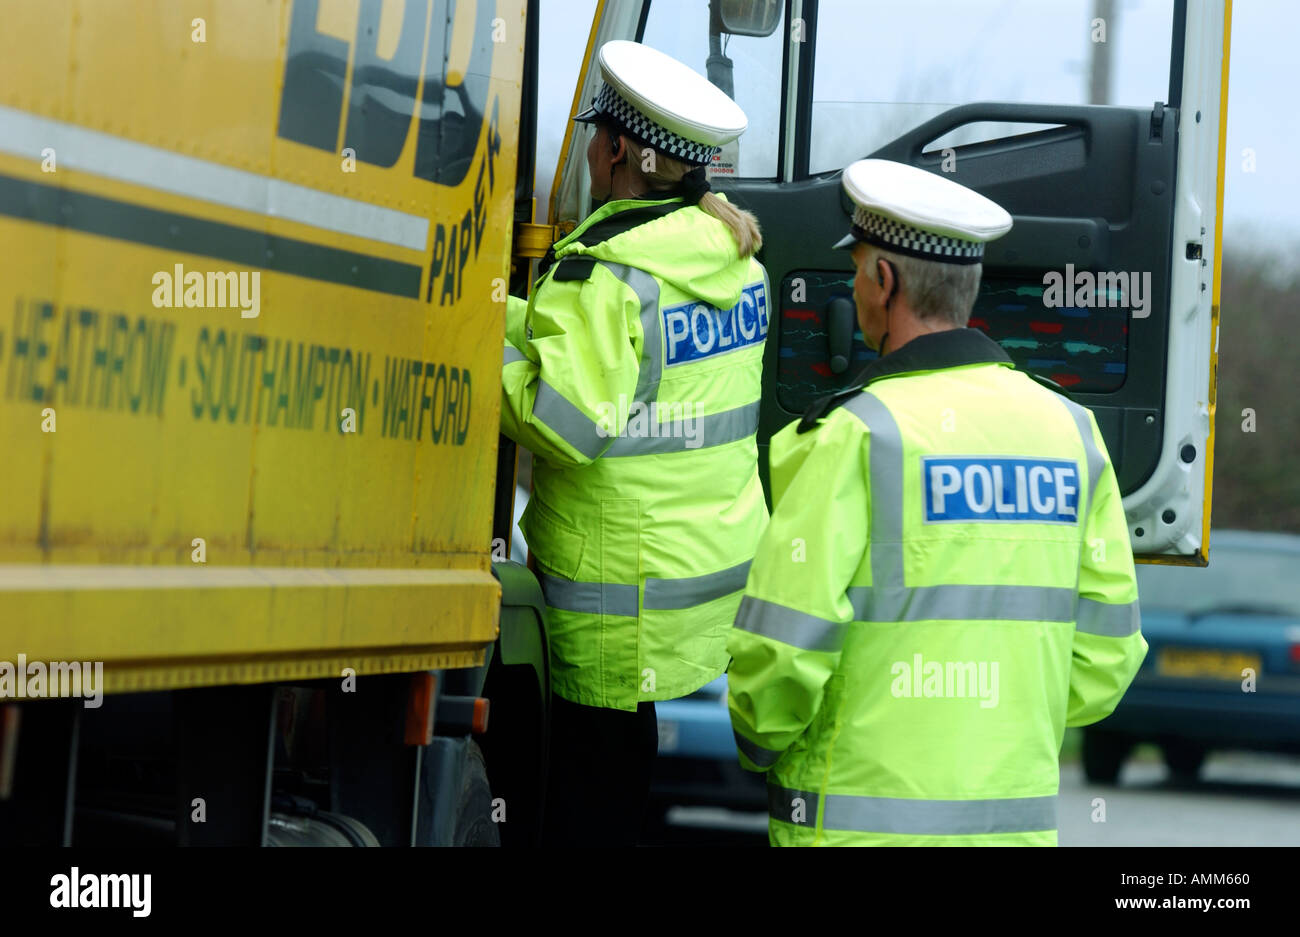 La Police de la route d'effectuer les contrôles d'arrêt sur les véhicules Banque D'Images